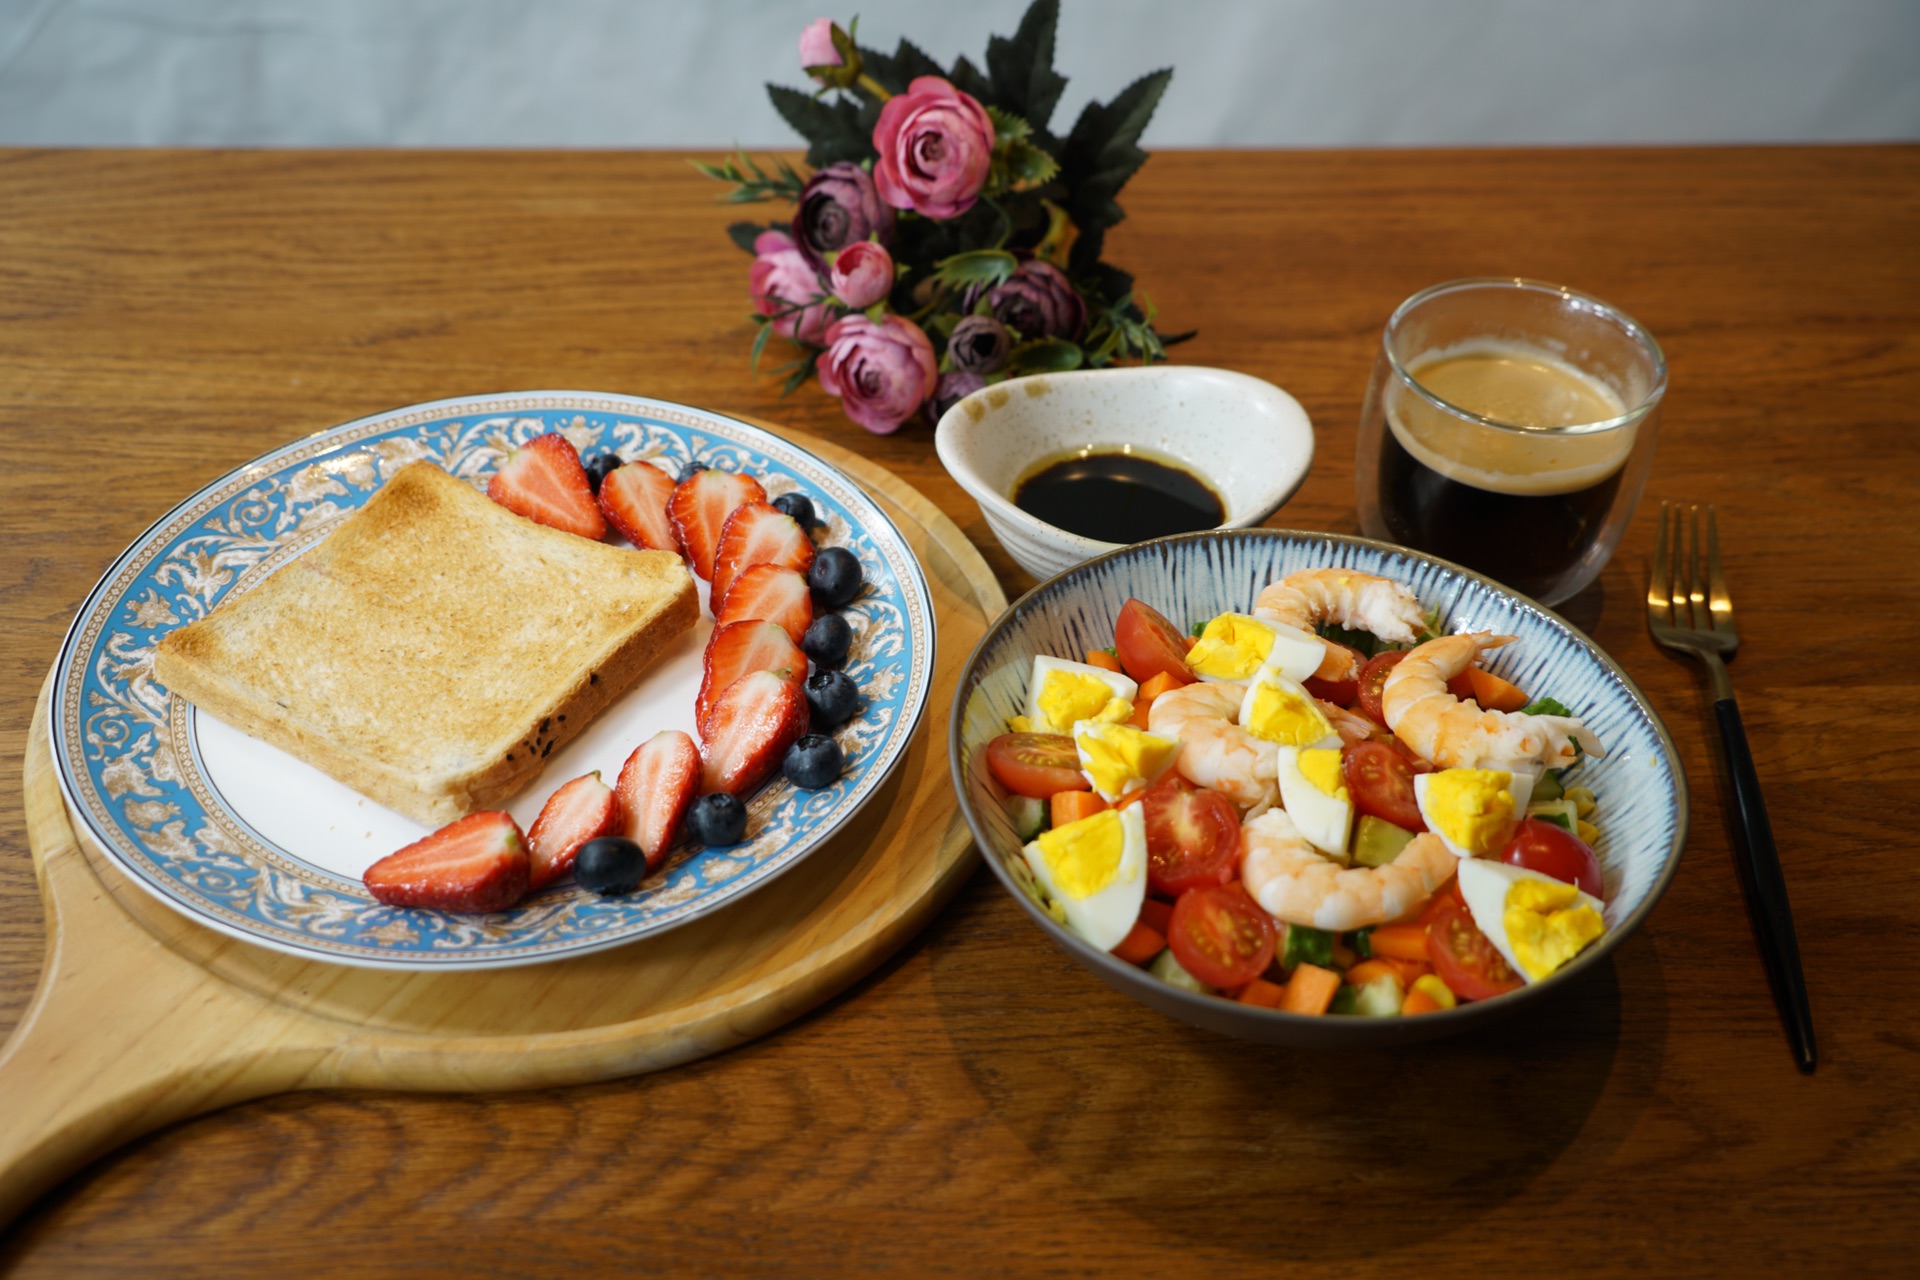 精致早餐360式:玉米虾仁沙拉配黑咖啡